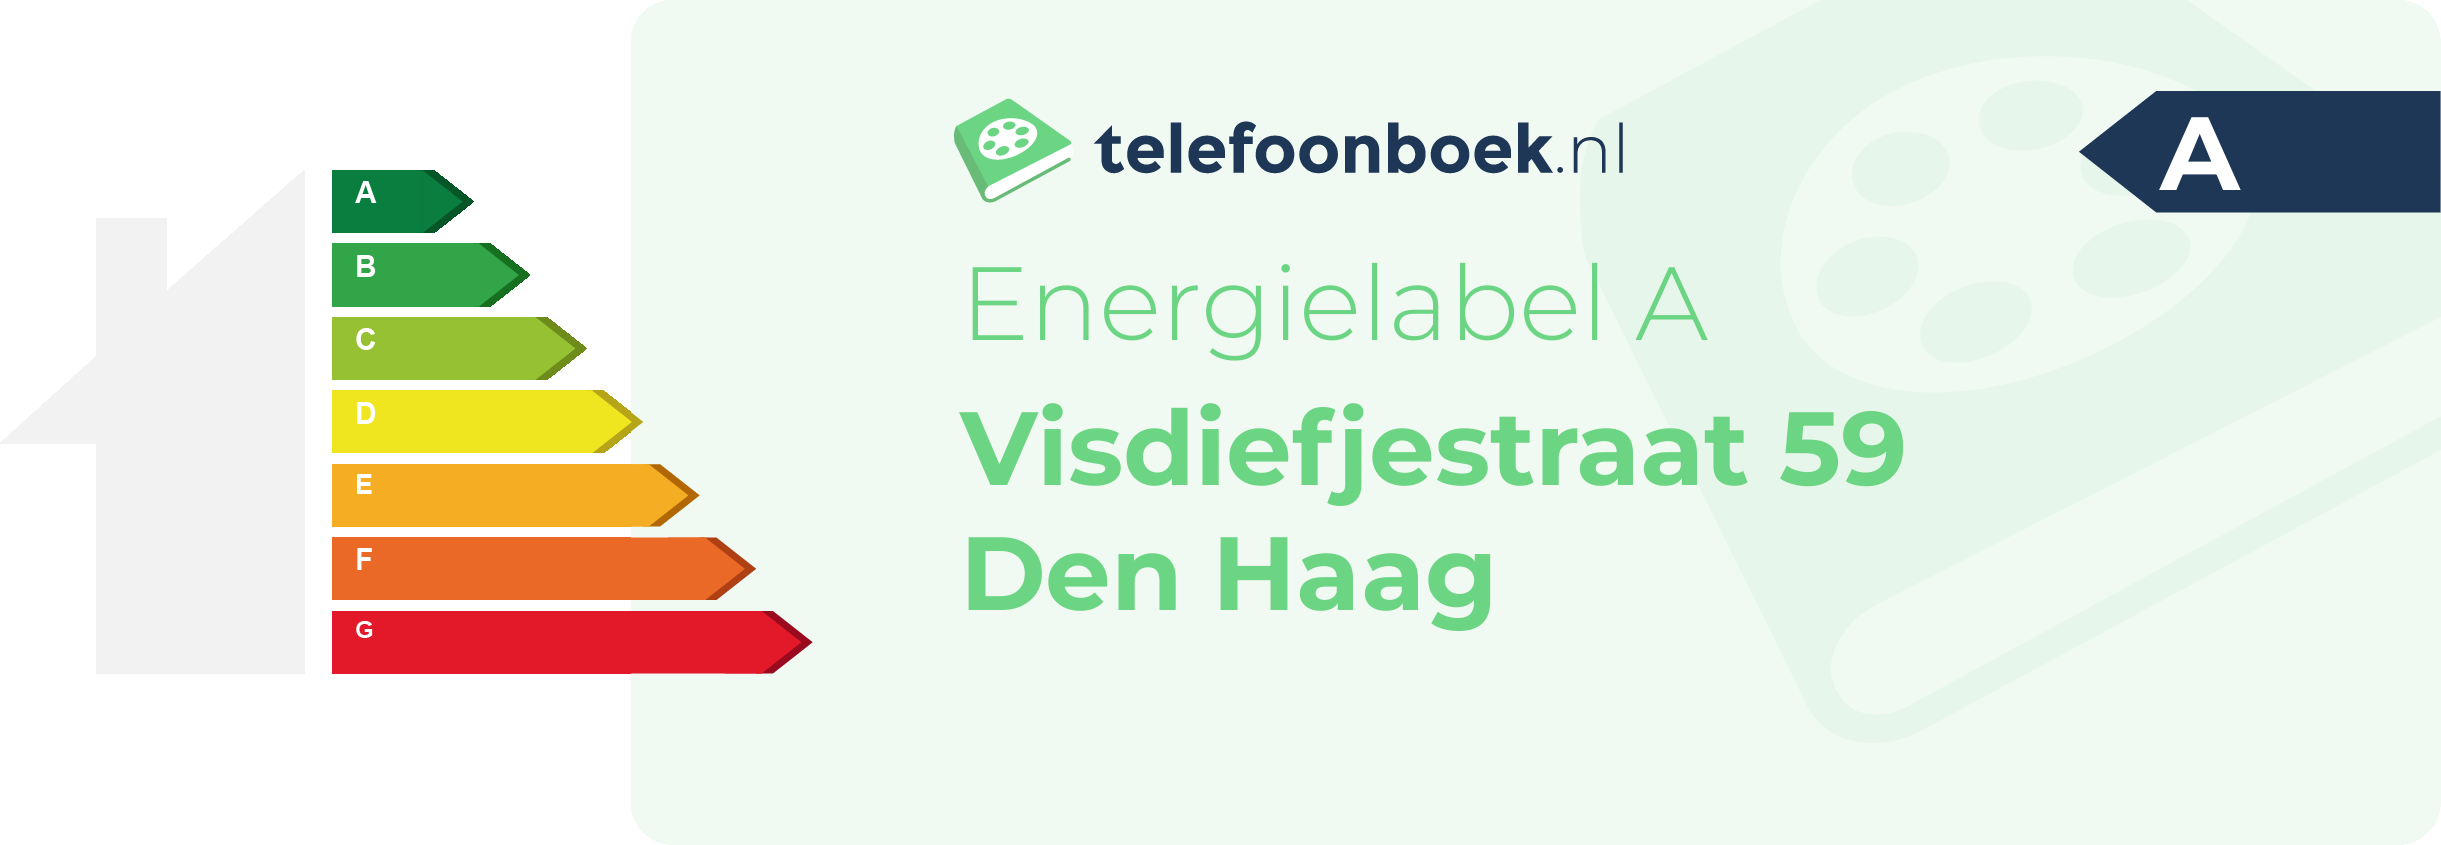 Energielabel Visdiefjestraat 59 Den Haag